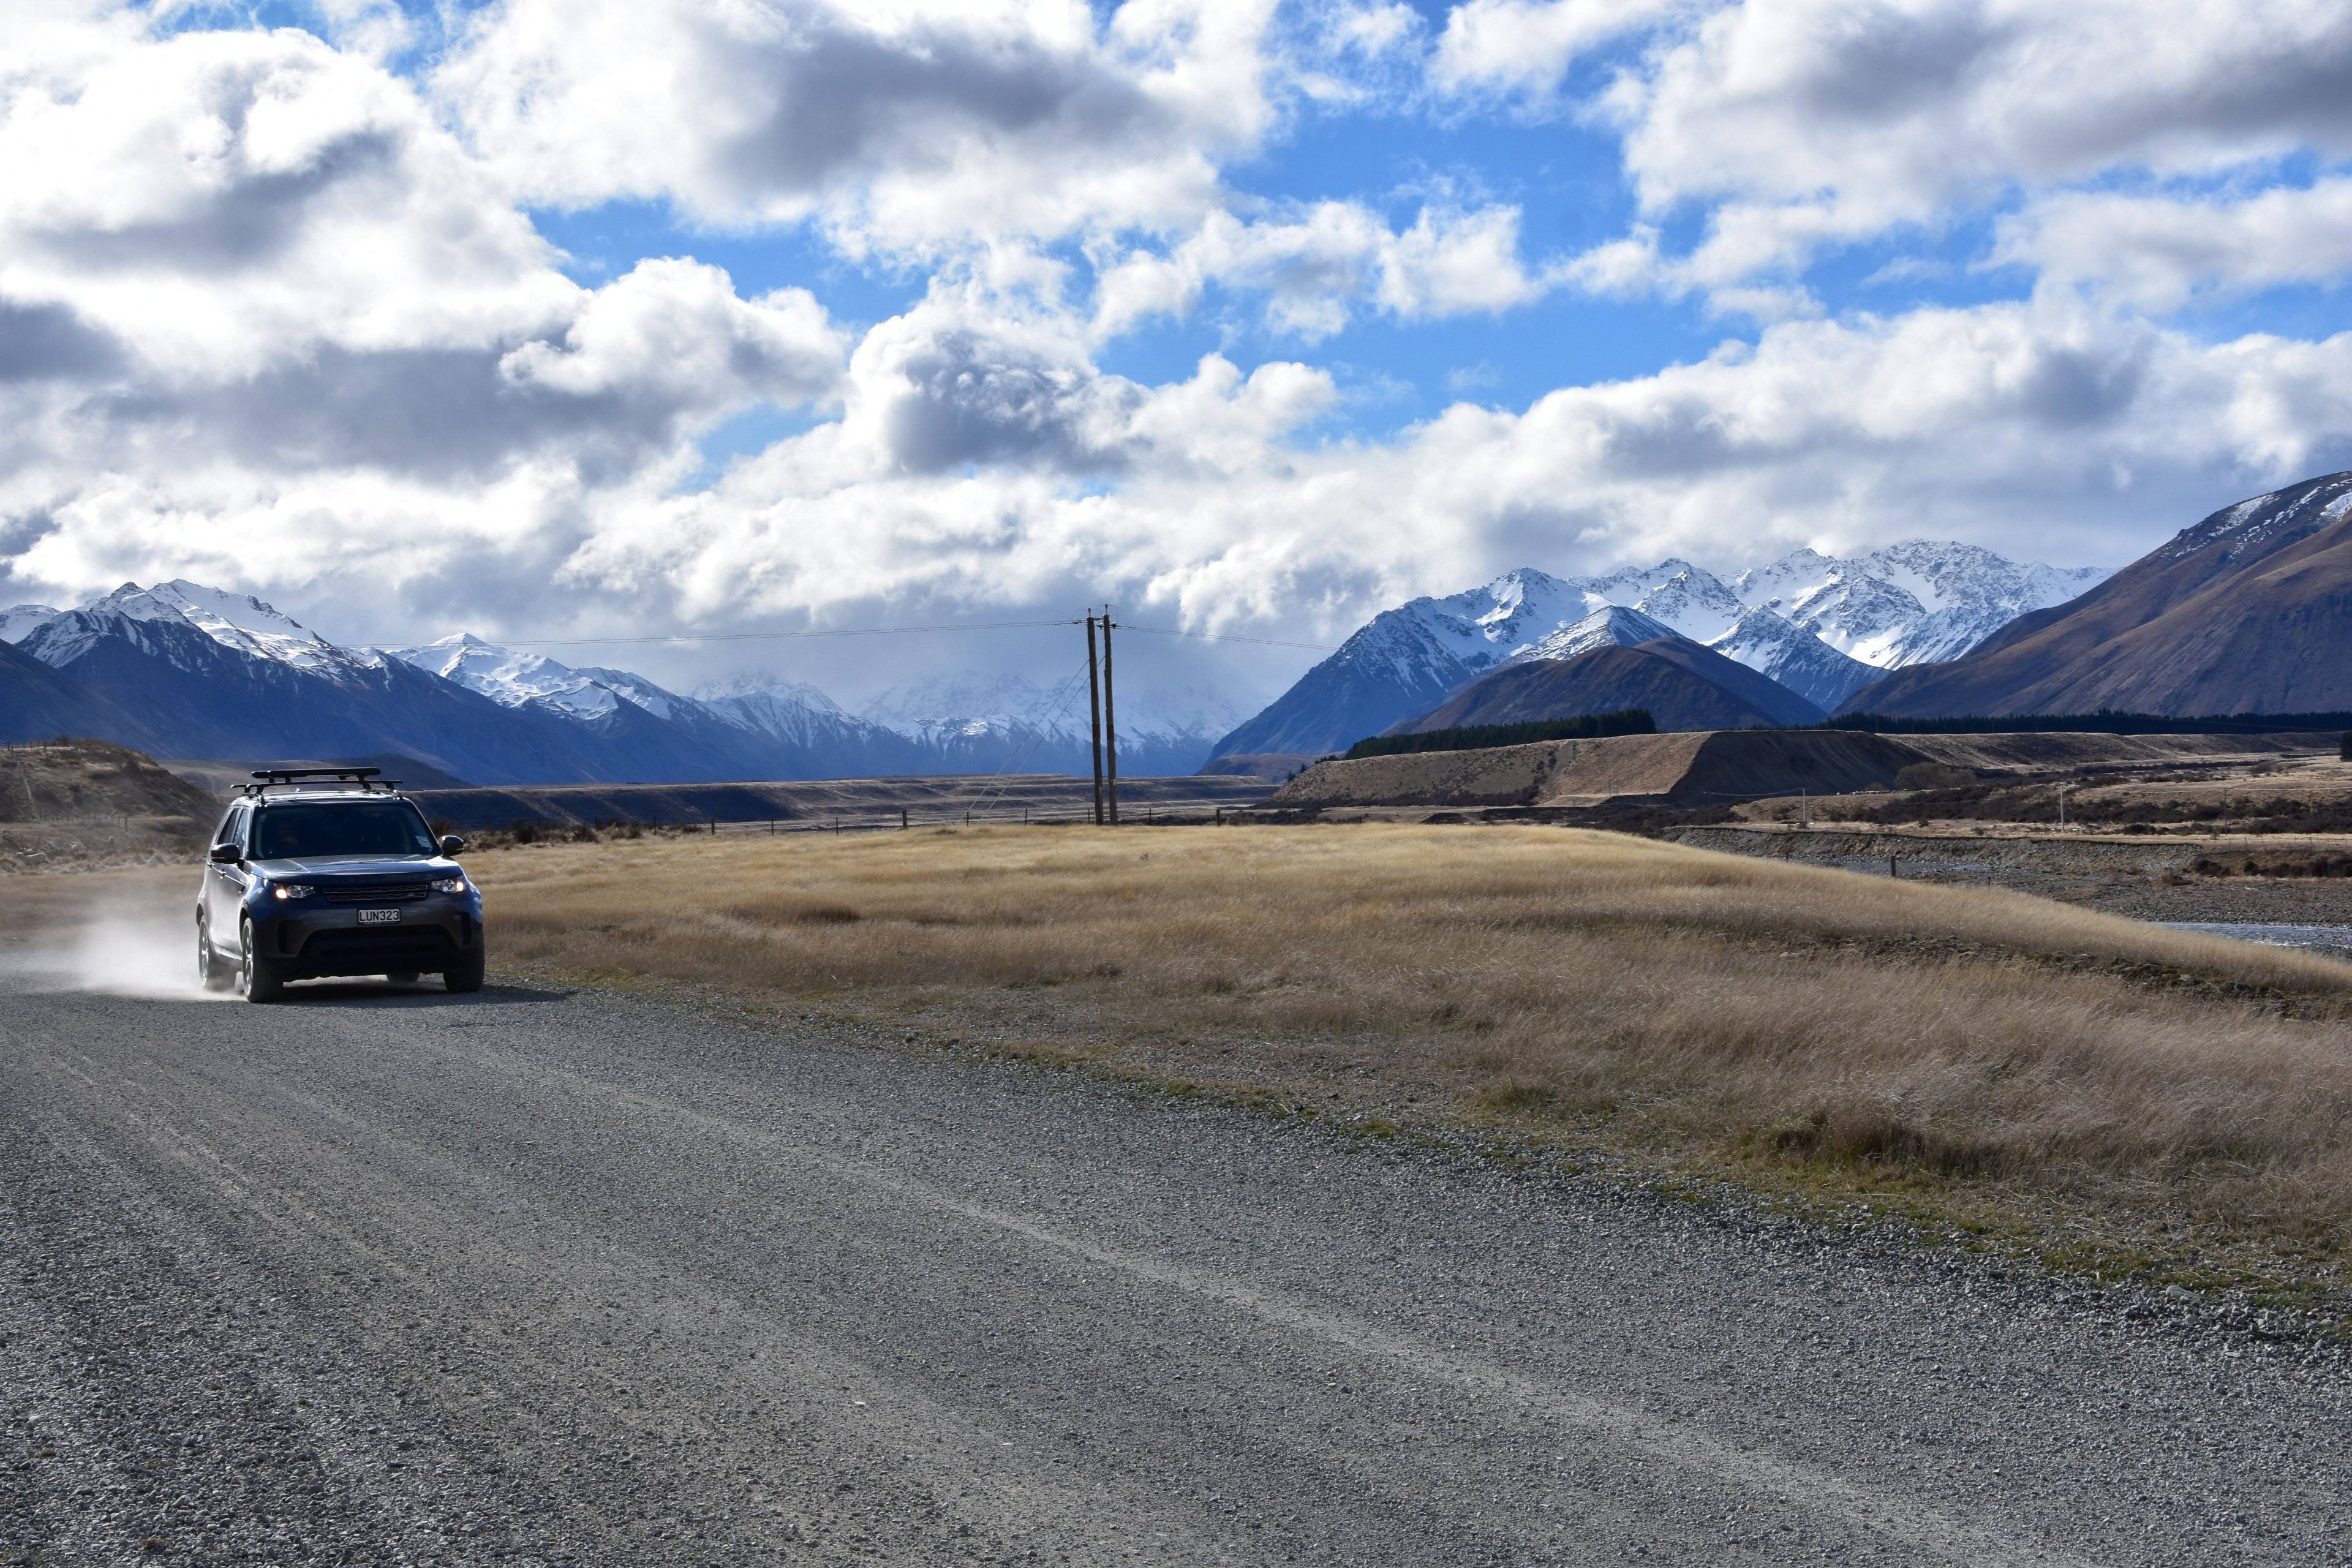 Roadtrip auf unbekannten Wegen des Kiwi-Landes